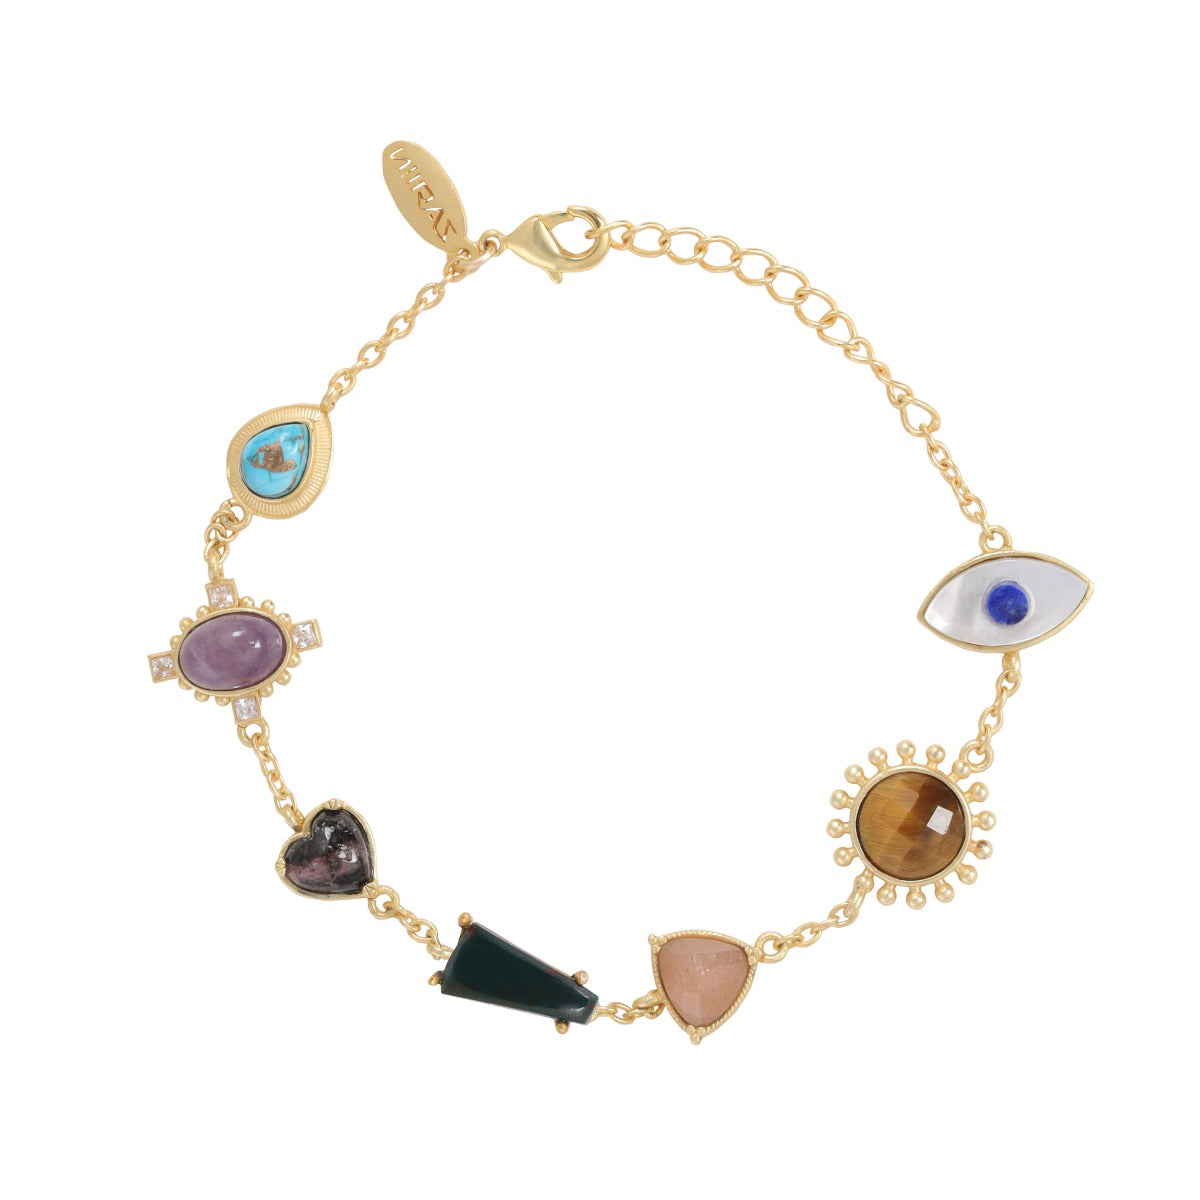 Buy Gold Kids Jewellery Online India - Earrings, Bracelets, Rings, Pendants